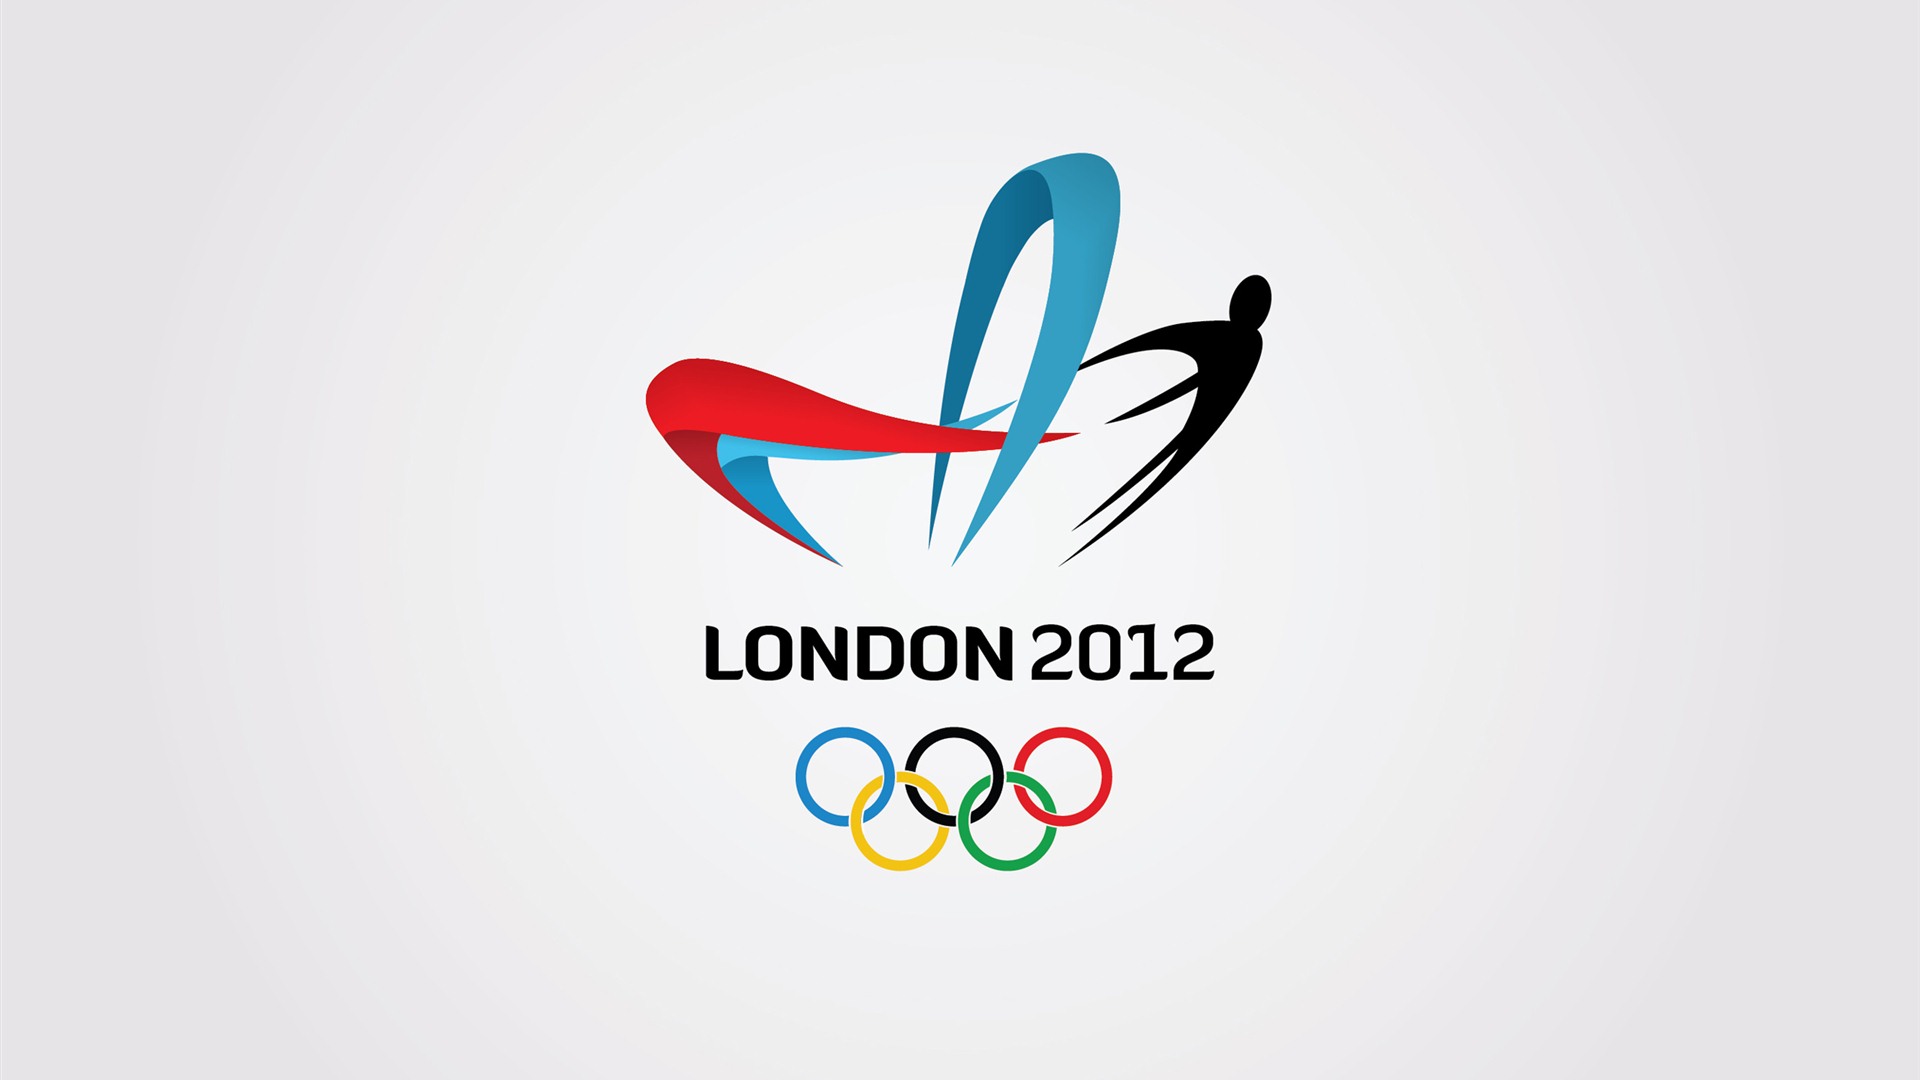 Londres 2012 Olimpiadas fondos temáticos (2) #25 - 1920x1080